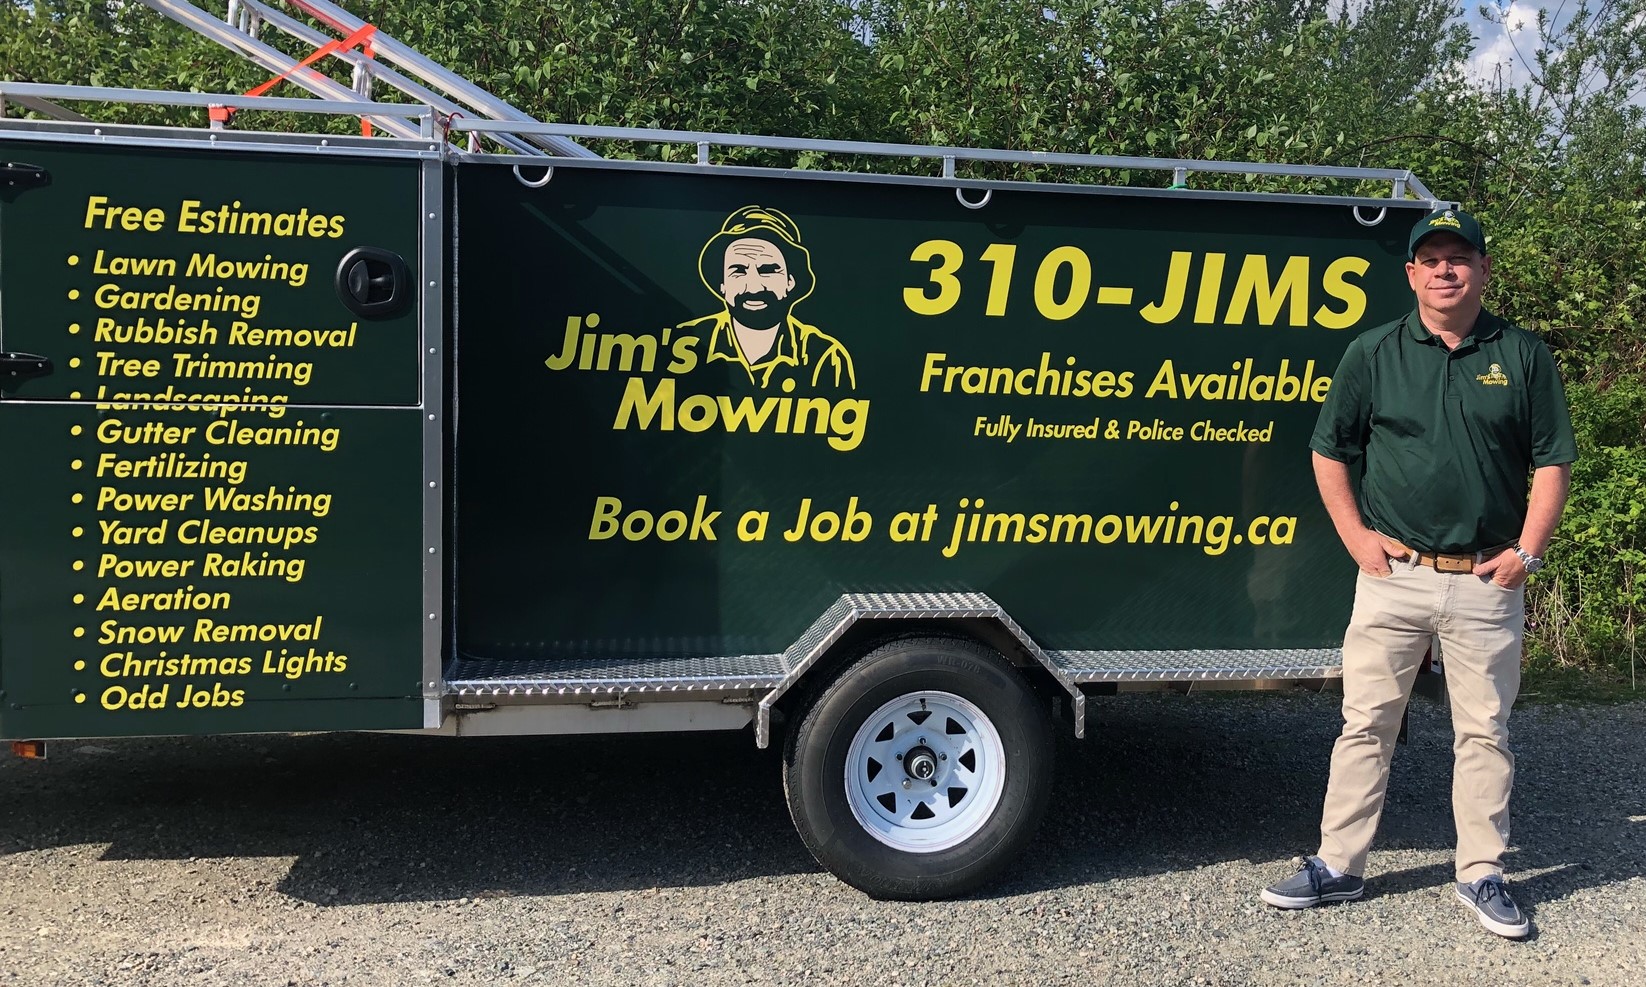 Jim’s Mowing Gardening Franchises in British Columbia